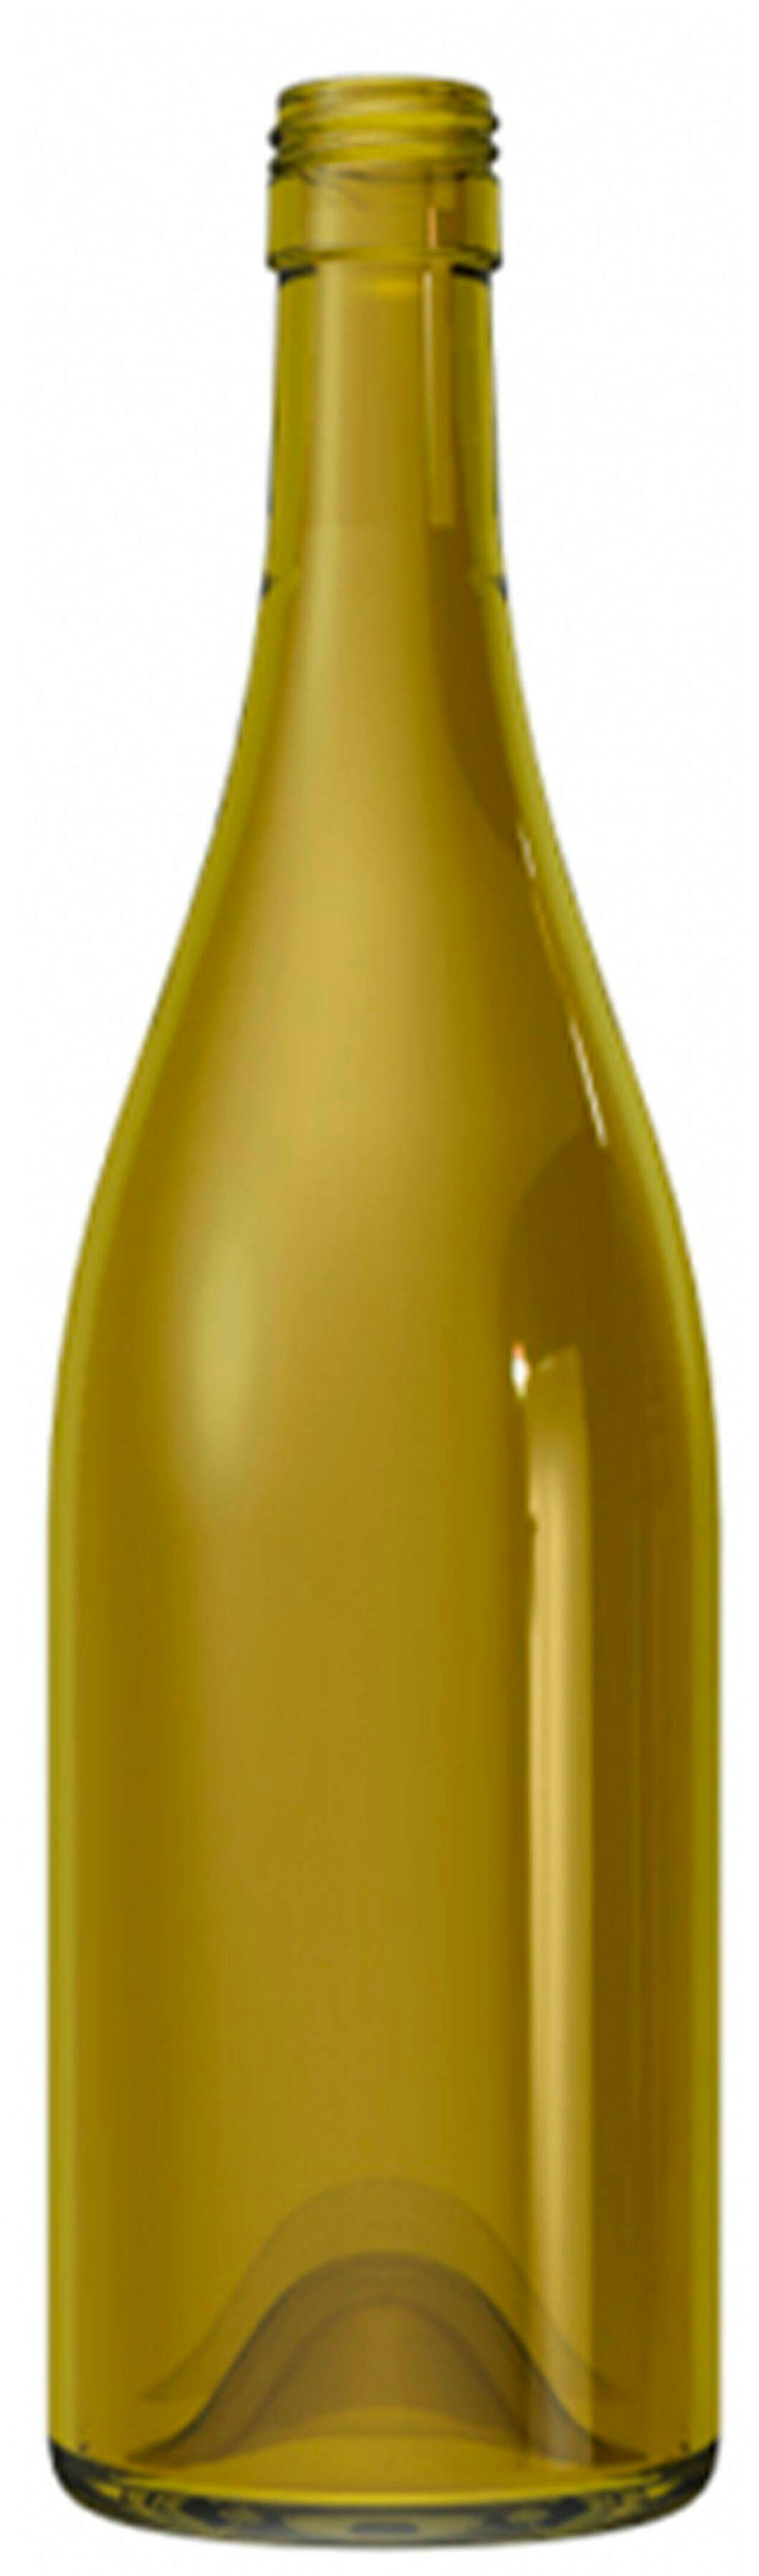 Bottle BORGOÑA REGAIN 750 ml BG-Screw